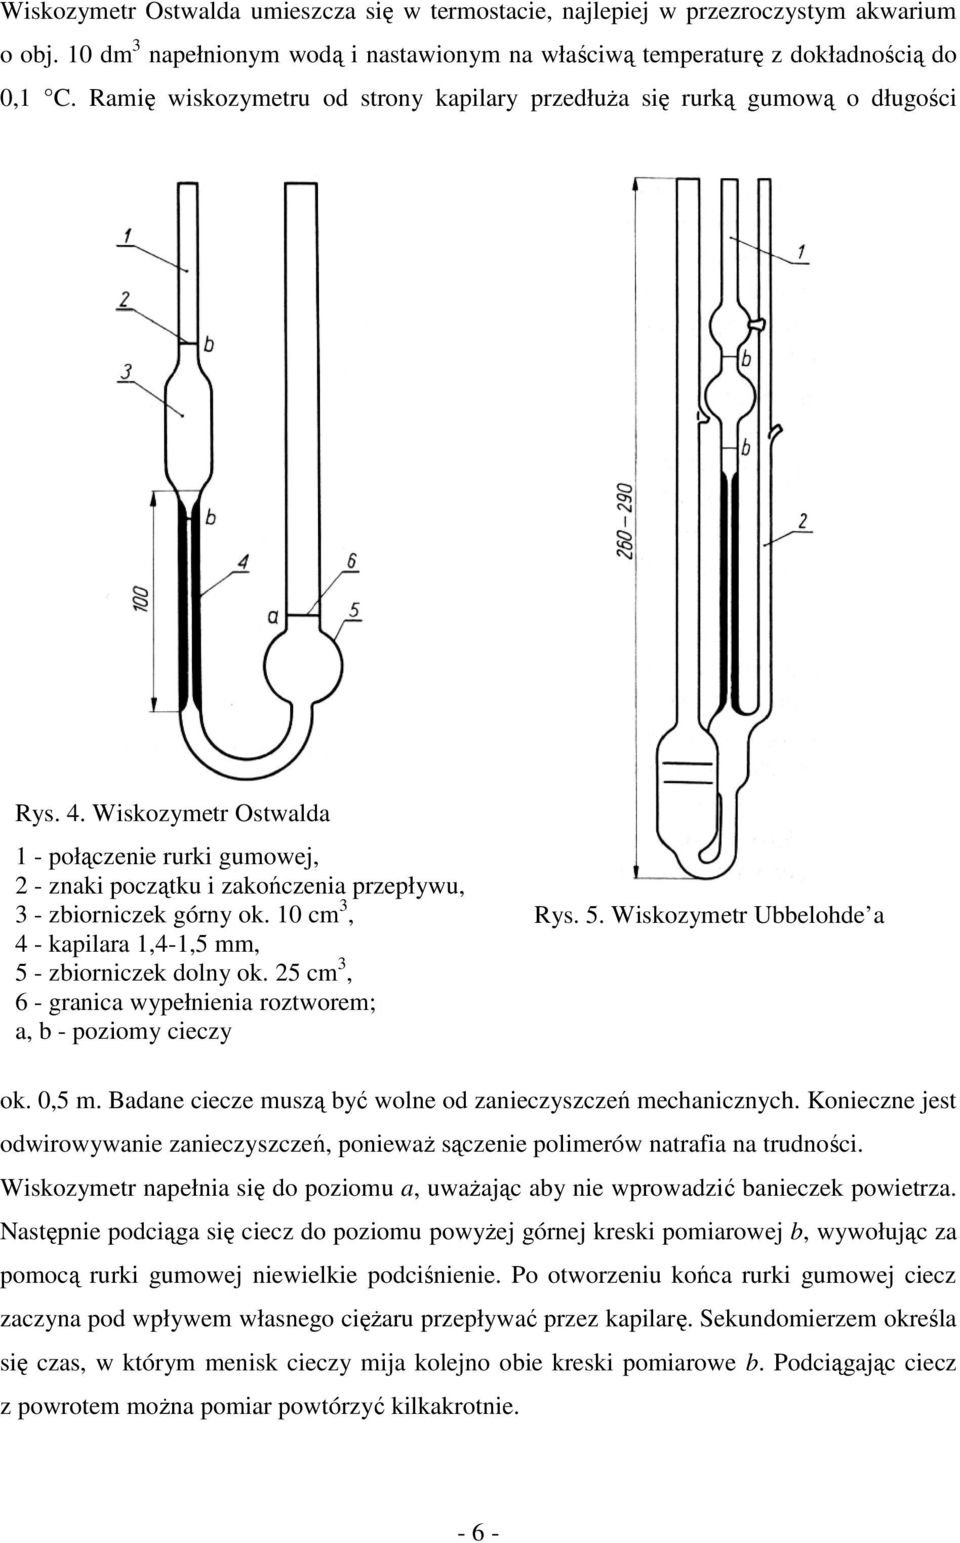 Wiskozymetr Ostwalda 1 - połączenie rurki gumowej, 2 - znaki początku i zakończenia przepływu, 3 - zbiorniczek górny ok. 10 cm 3, 4 - kapilara 1,4-1,5 mm, 5 - zbiorniczek dolny ok.